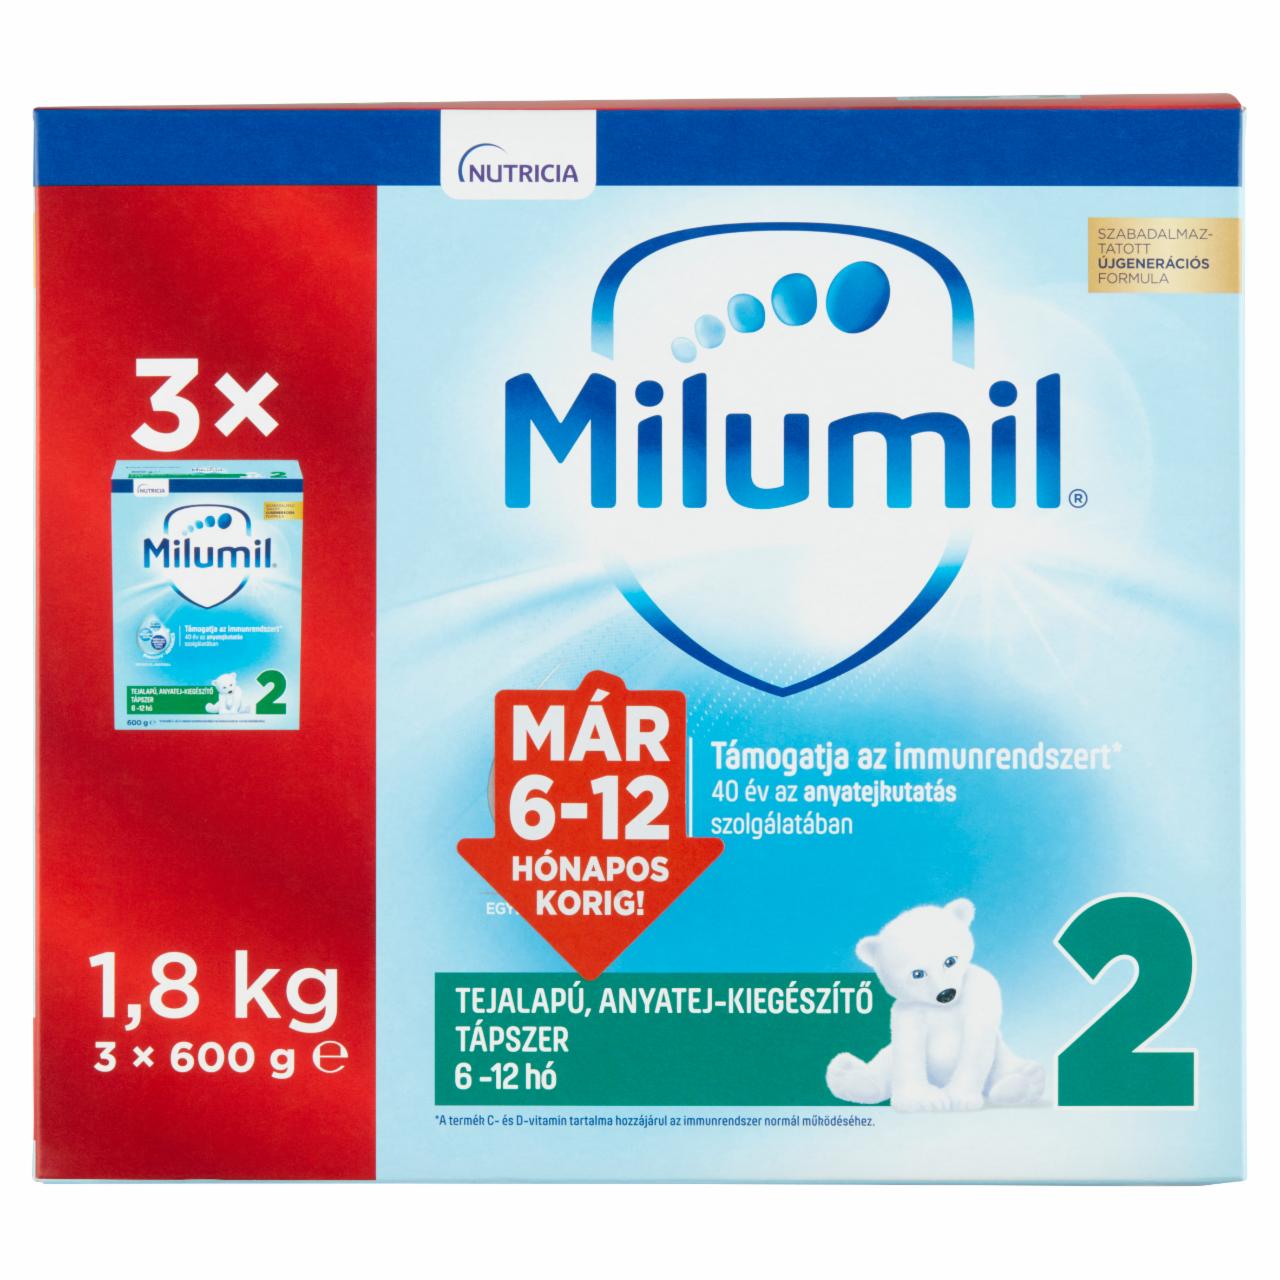 Képek - Milumil Nutri-Biotik 2 tejalapú anyatej-kiegészítő tápszer 6 hó+ 3 x 600 g (1,8 kg)